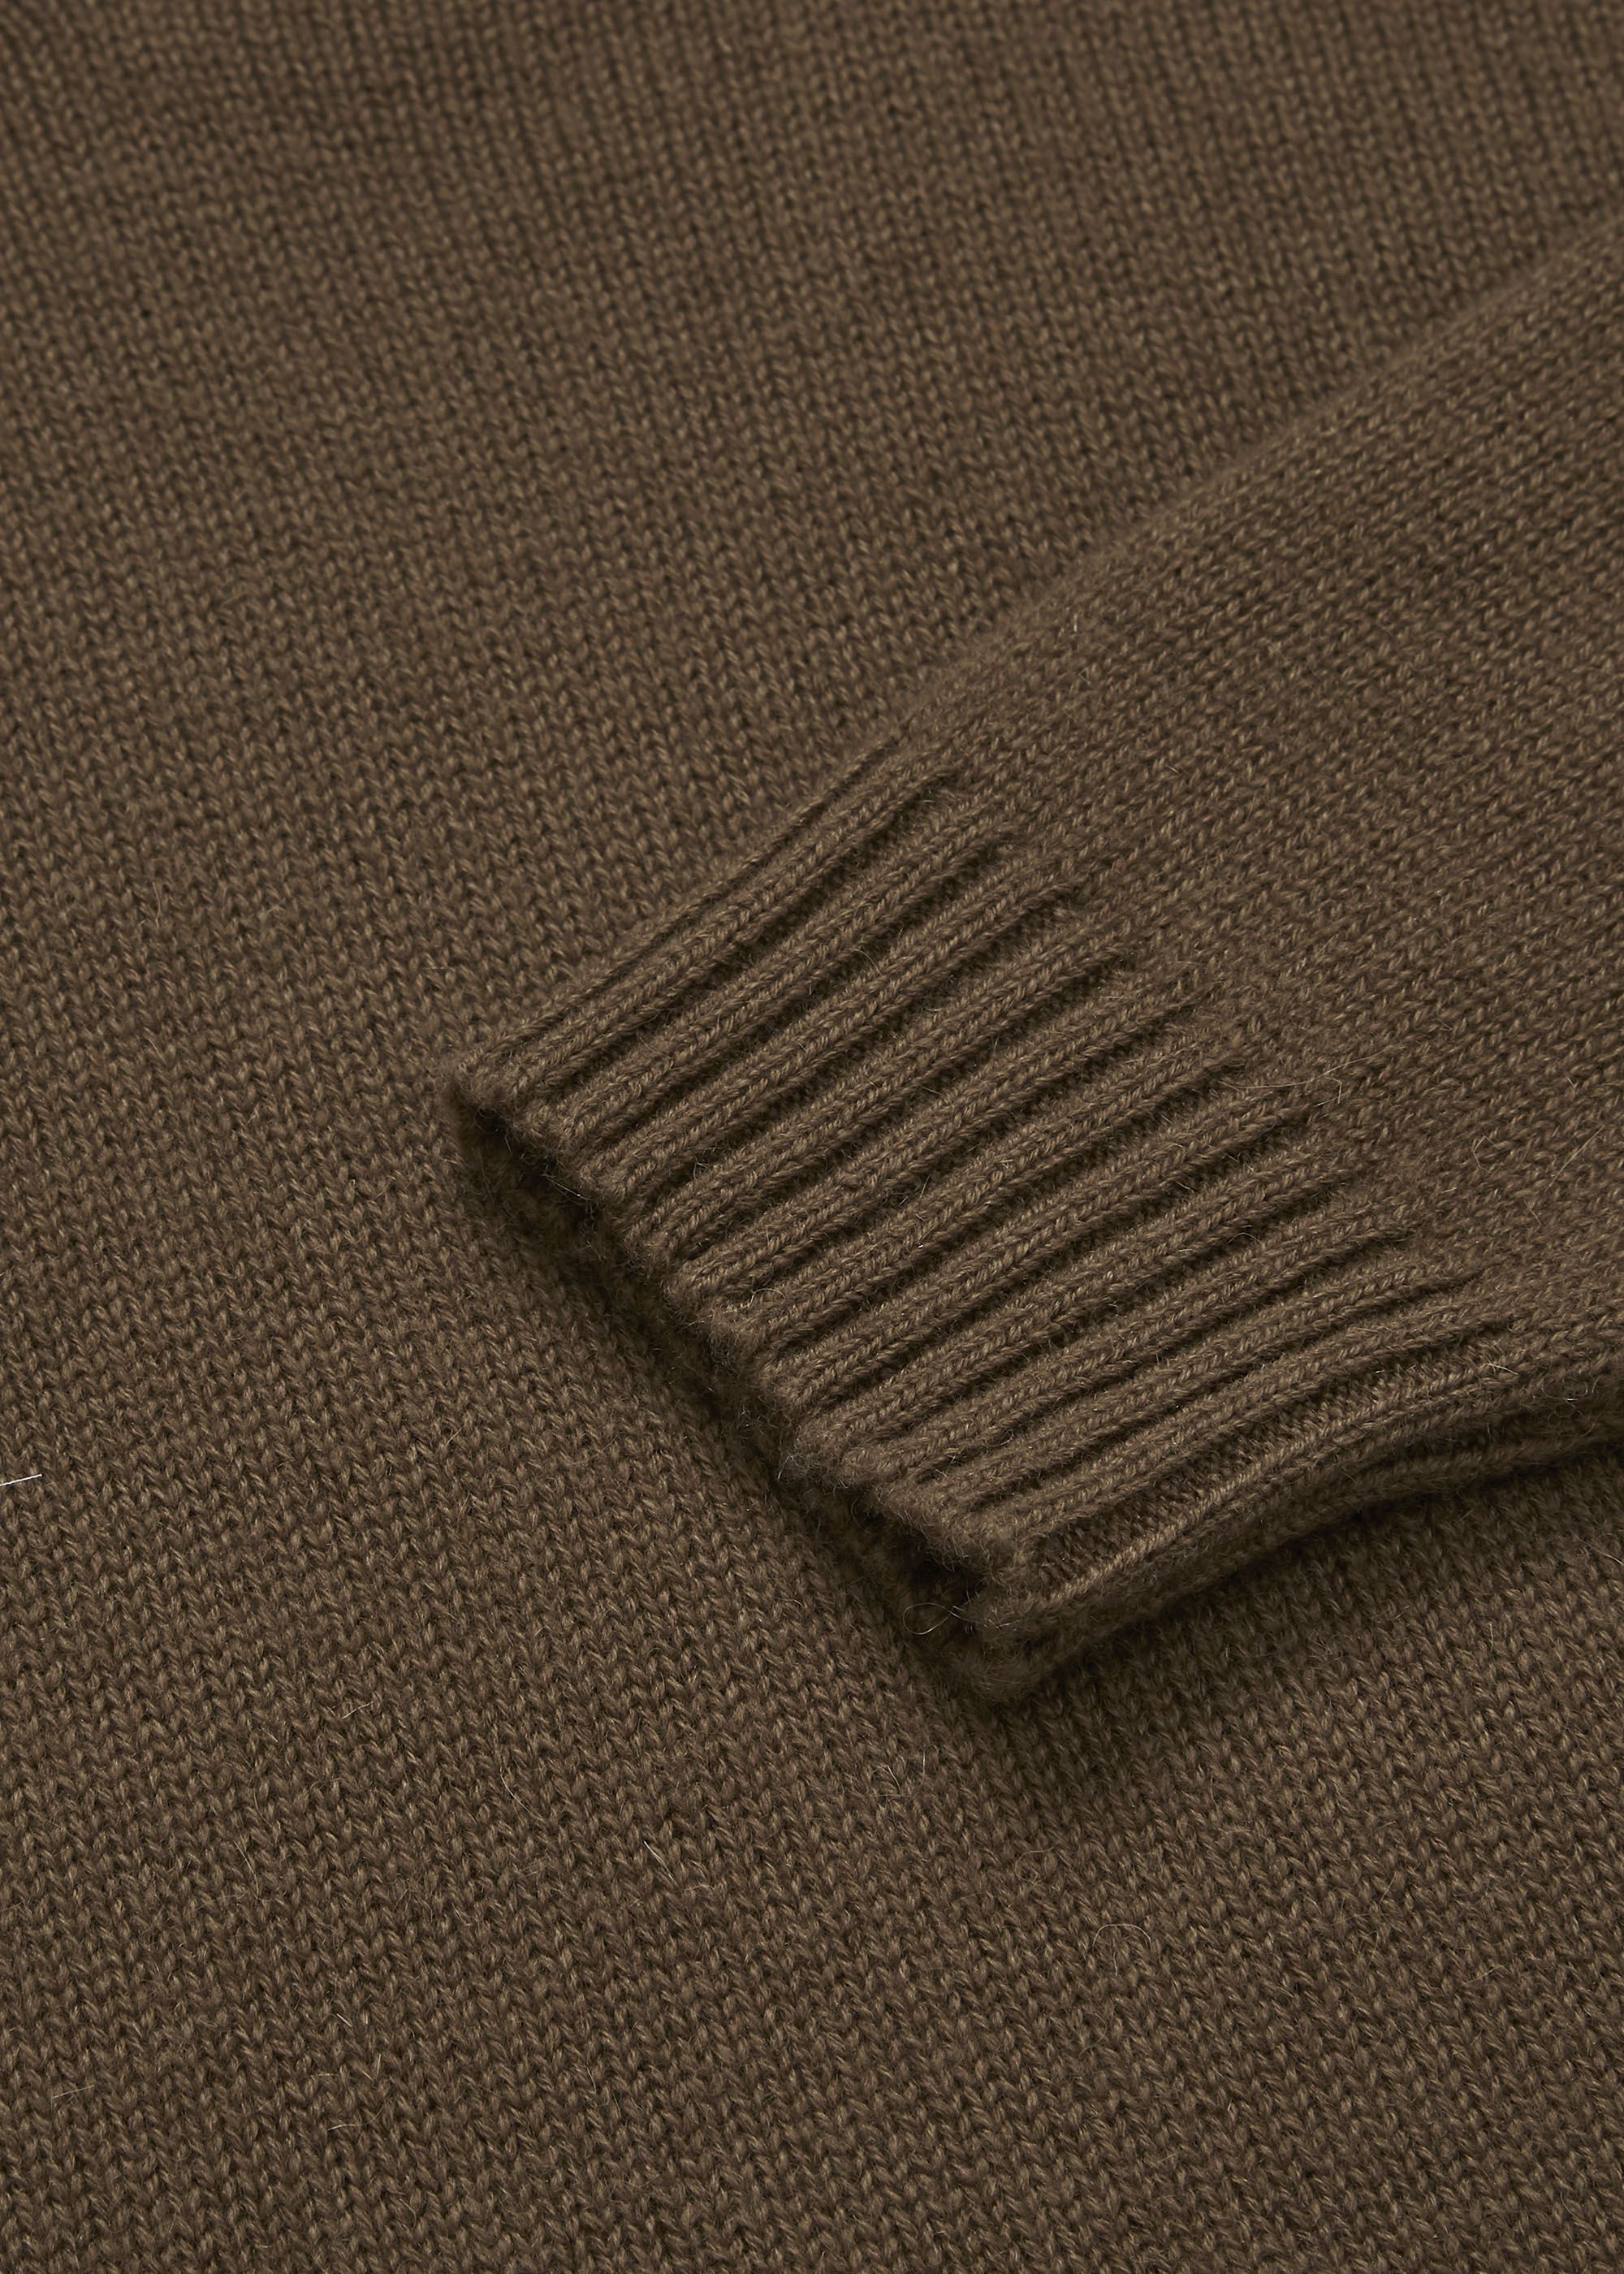 Knitwear - Saga sweater